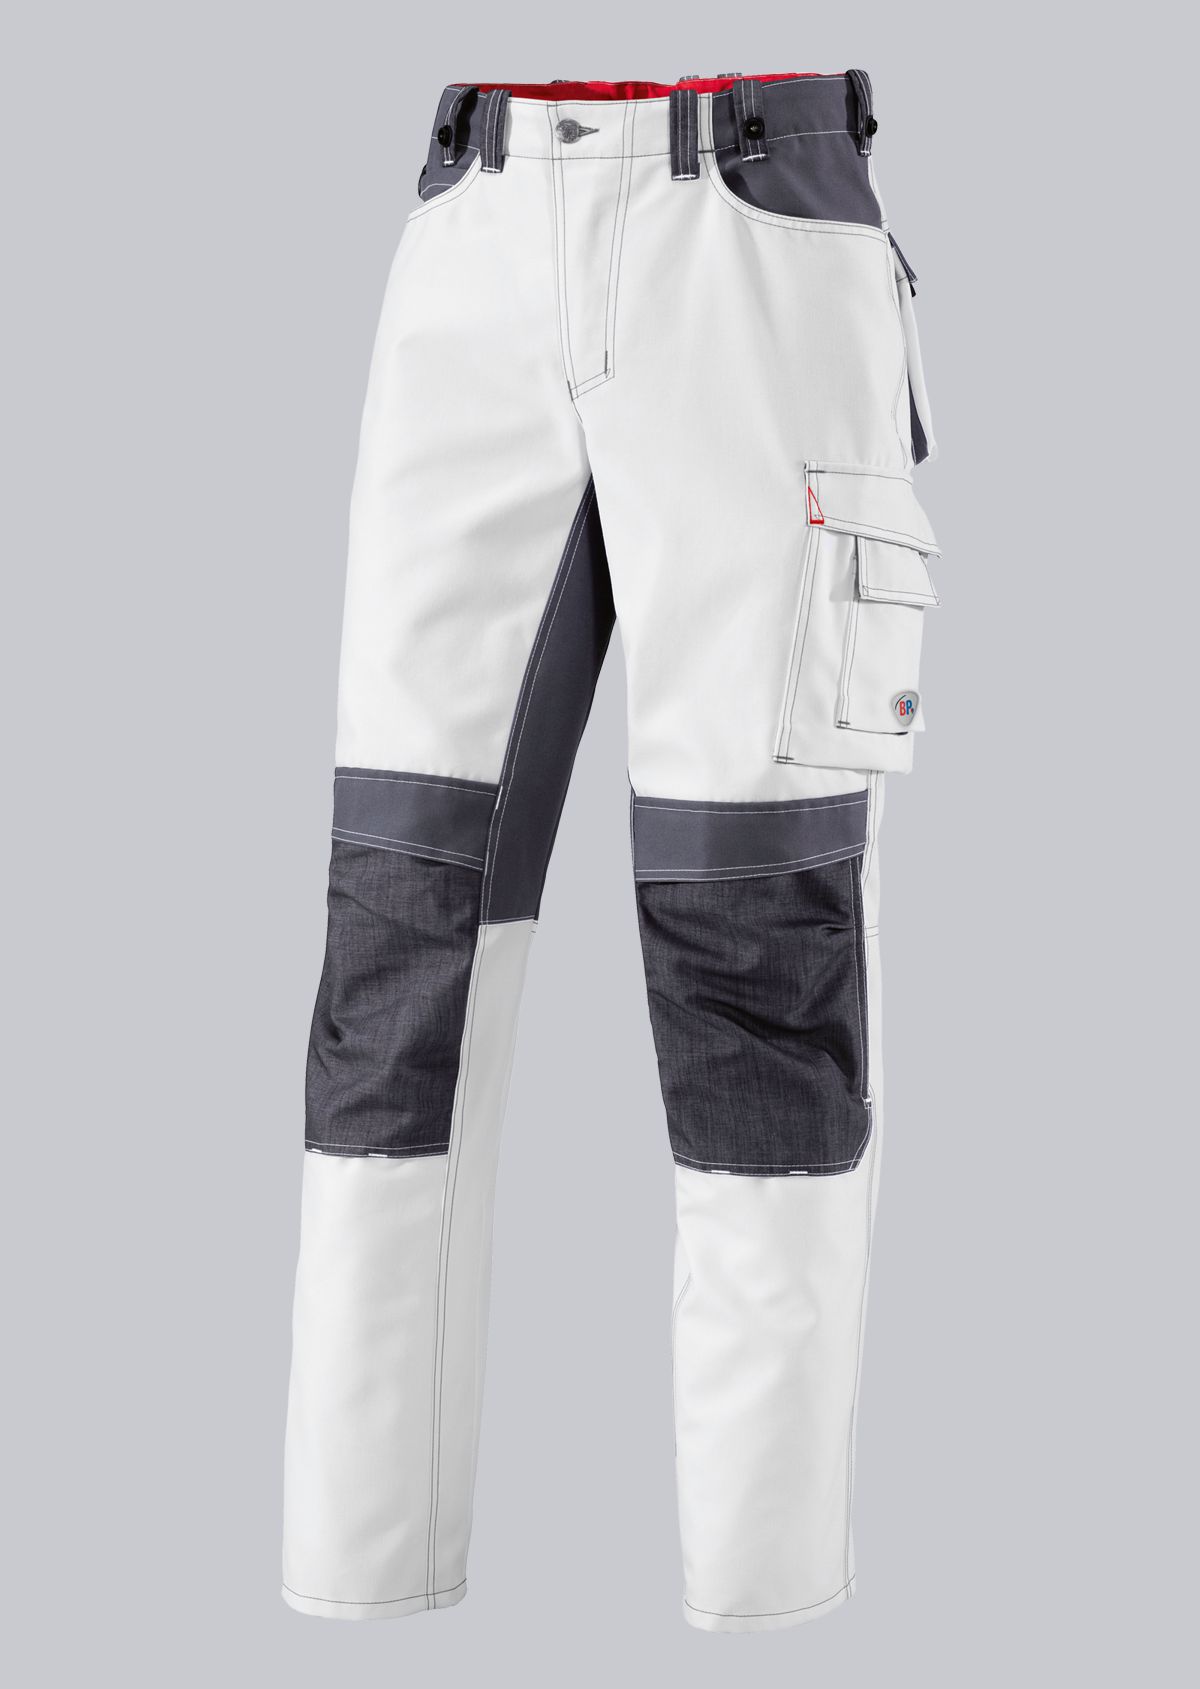 BP® Pantalon de travail résistant avec genouillères